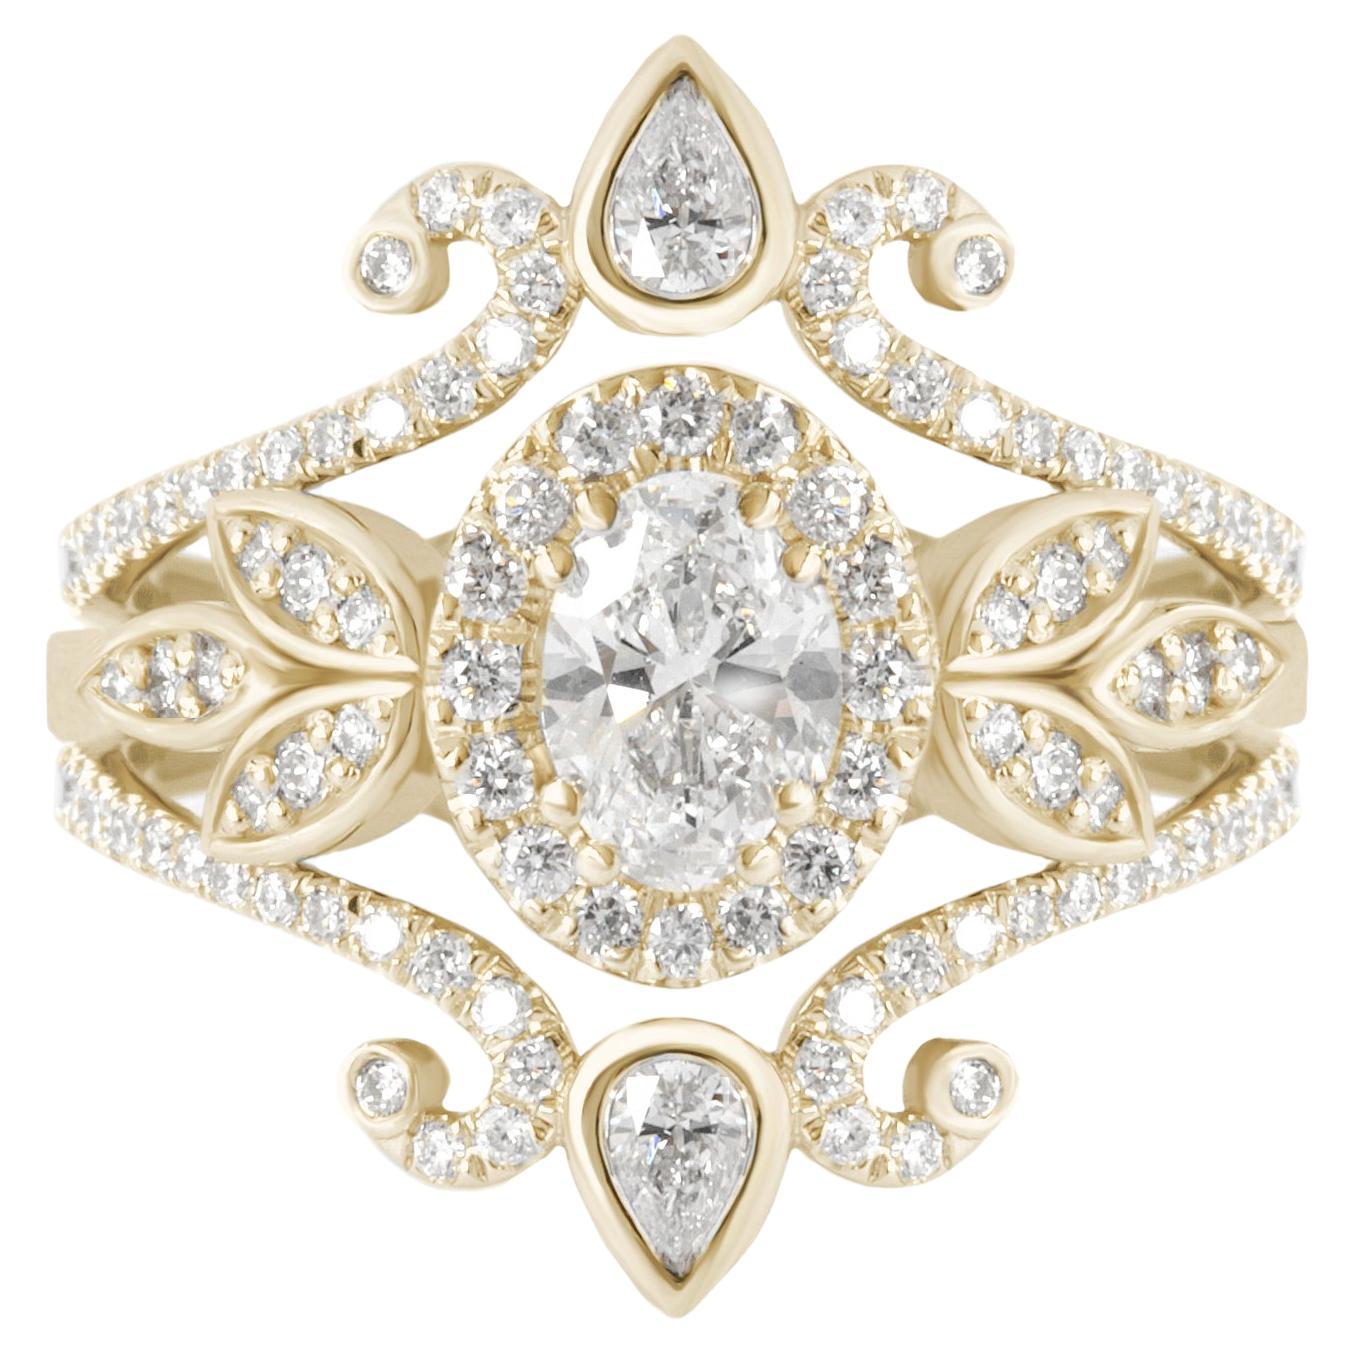 0.5 carat oval diamond ring